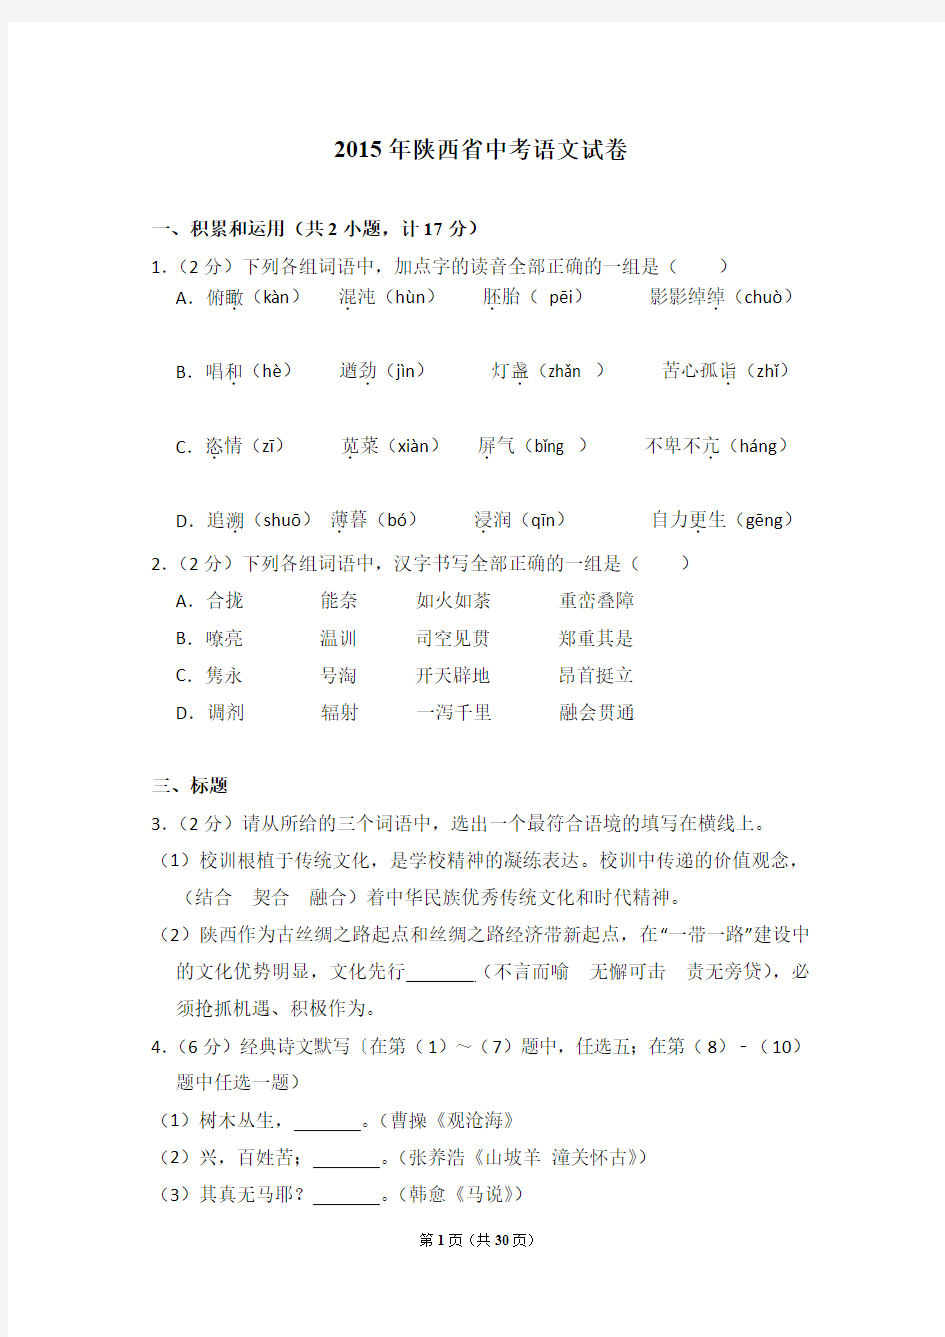 2015年陕西省中考语文试卷及详细试卷解析